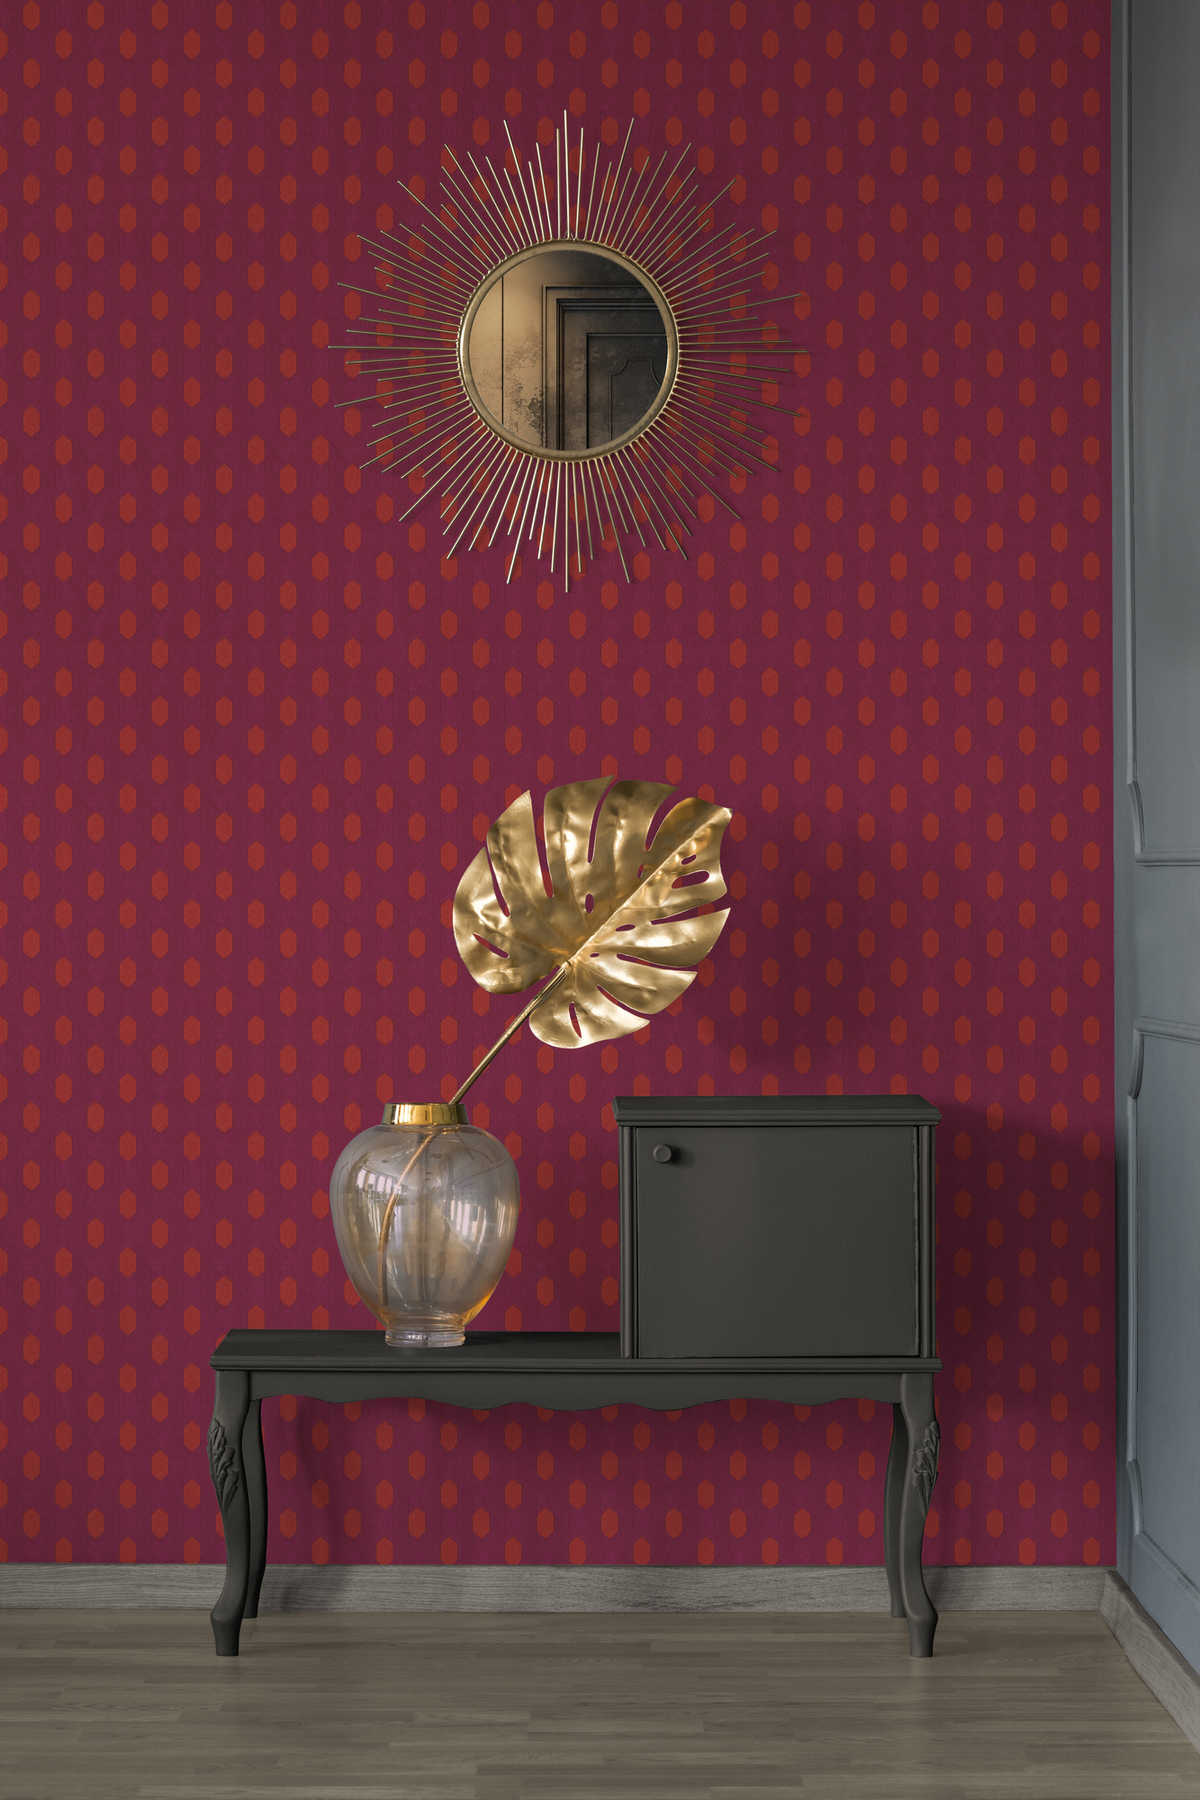             Magenta behang met geometrisch patroon - violet, rood, oranje
        